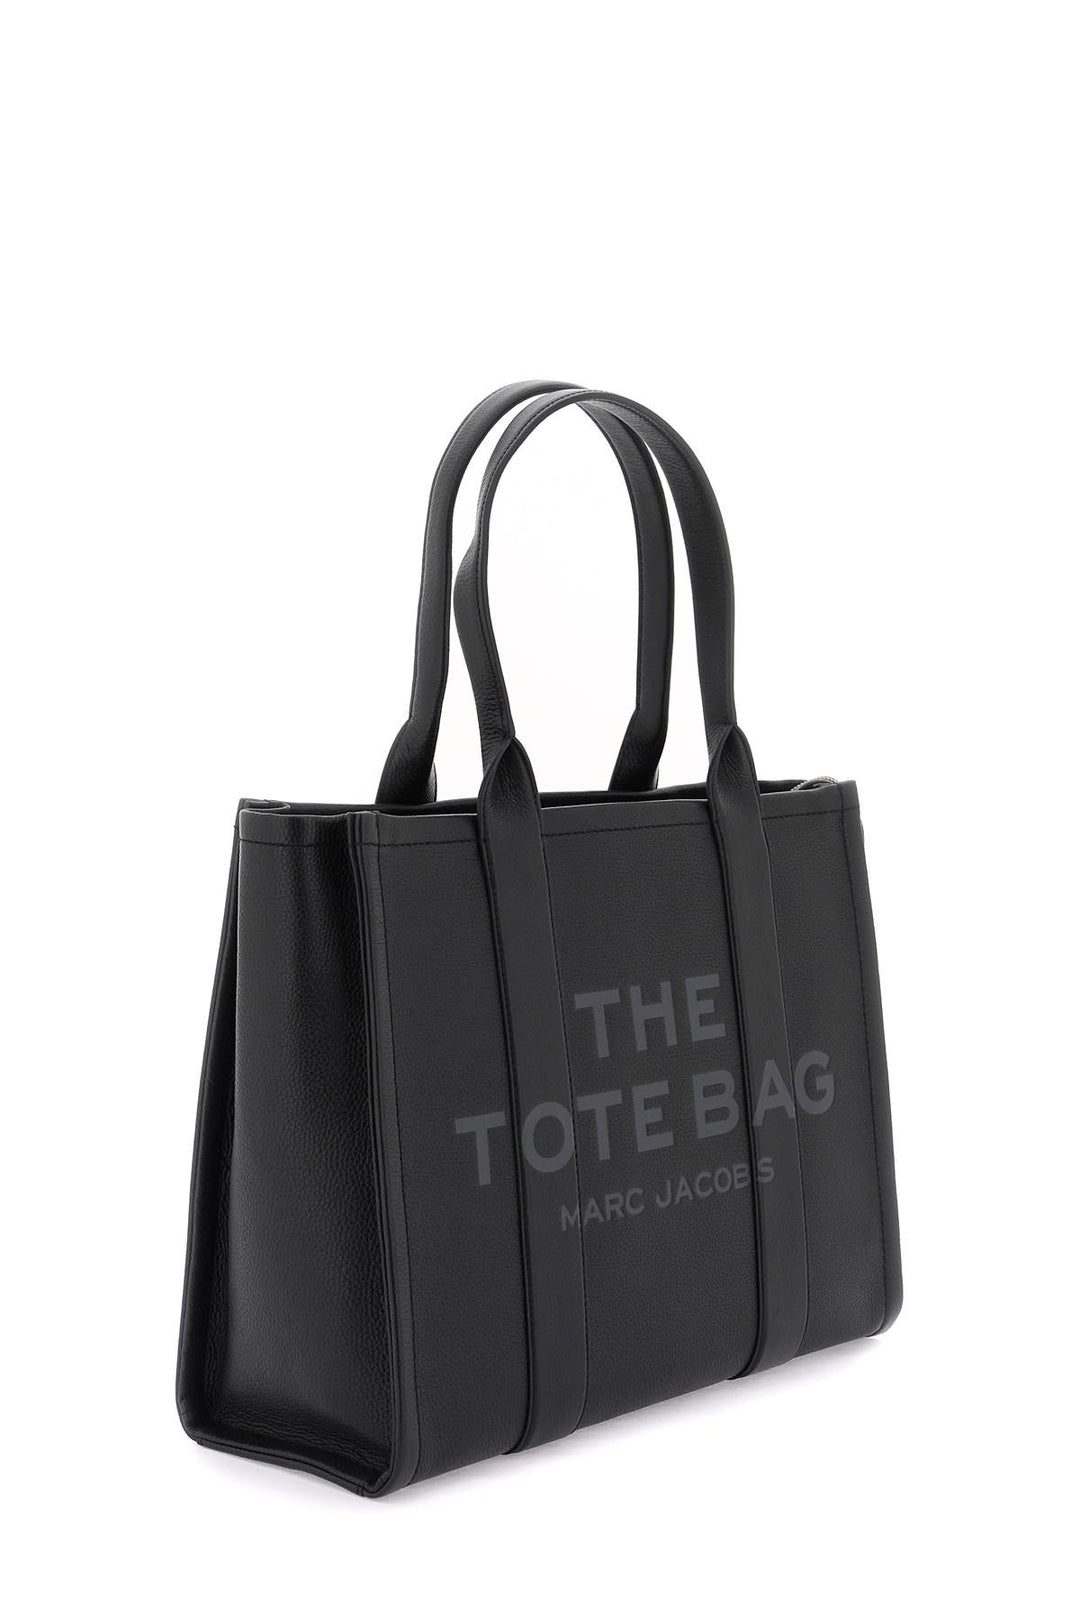 Borsa The Leather Large Tote Bag